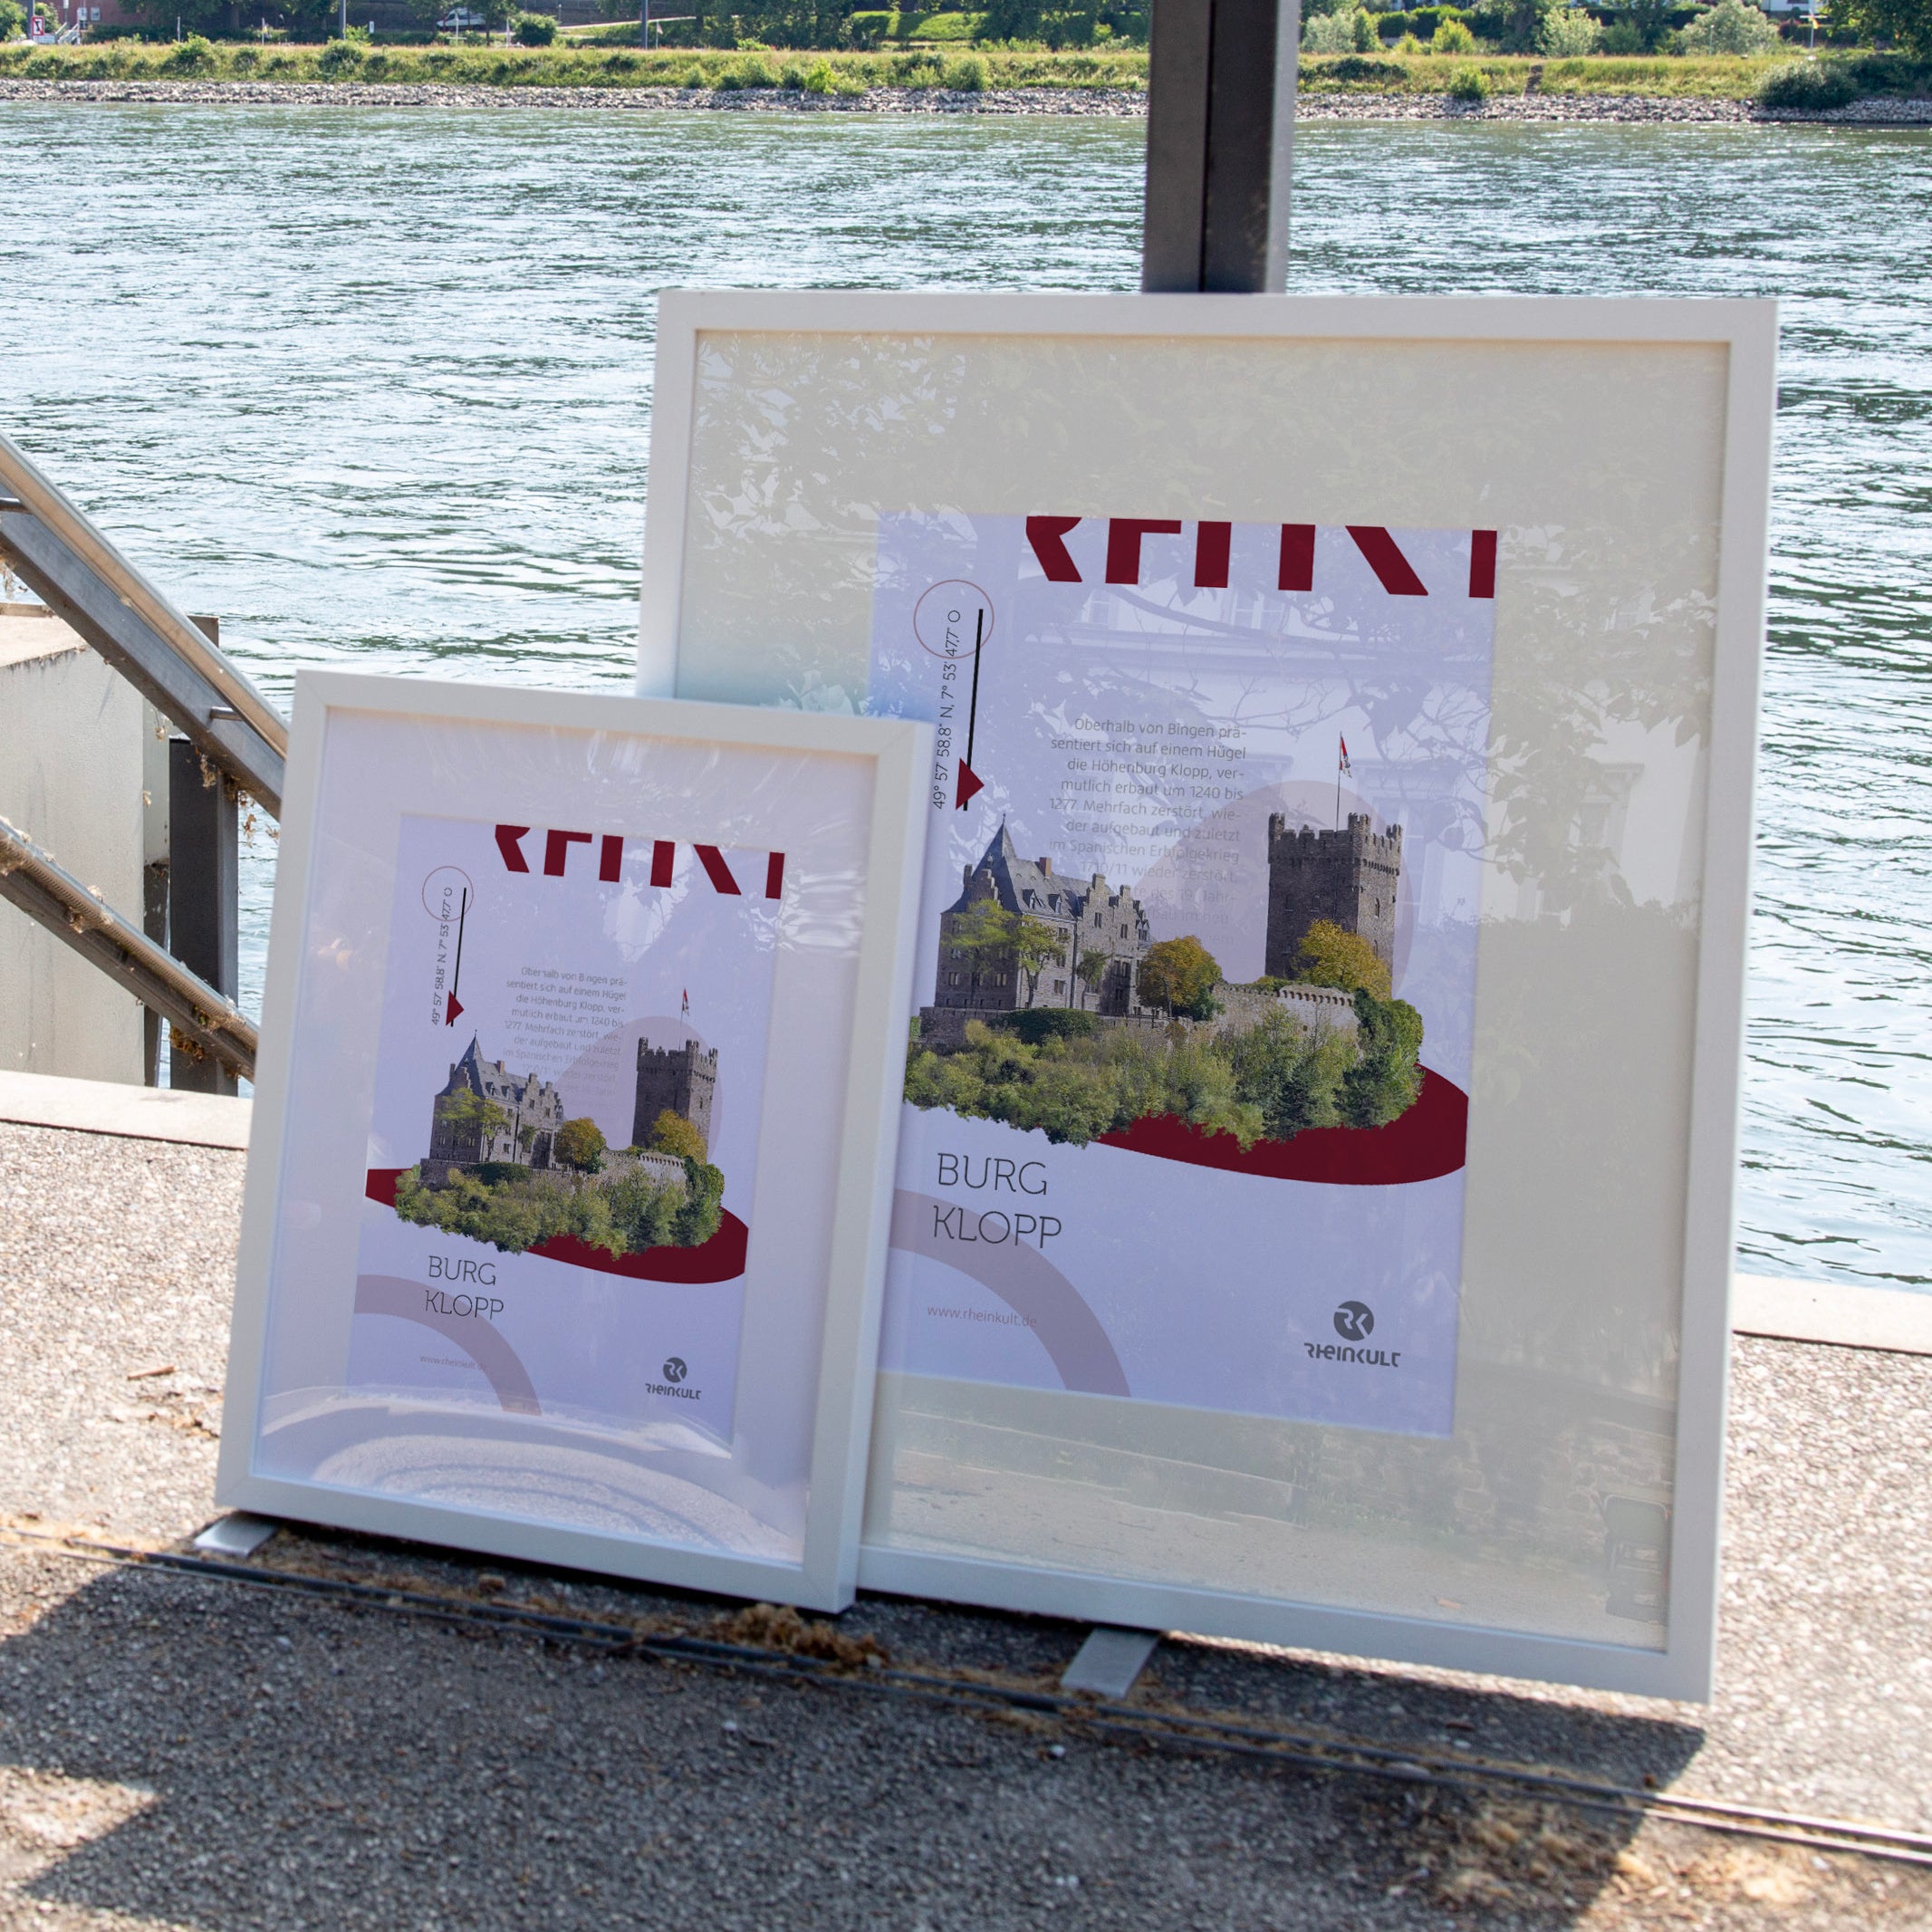 Zwei unterschiedlich große Rahmen stehen an ein Geländer gelehnt mit dem Rhein im Hintergrund. Sie zeigen das Rheinkult Poster „Burg Klopp“ in den Größen DIN A3 und DIN A4.